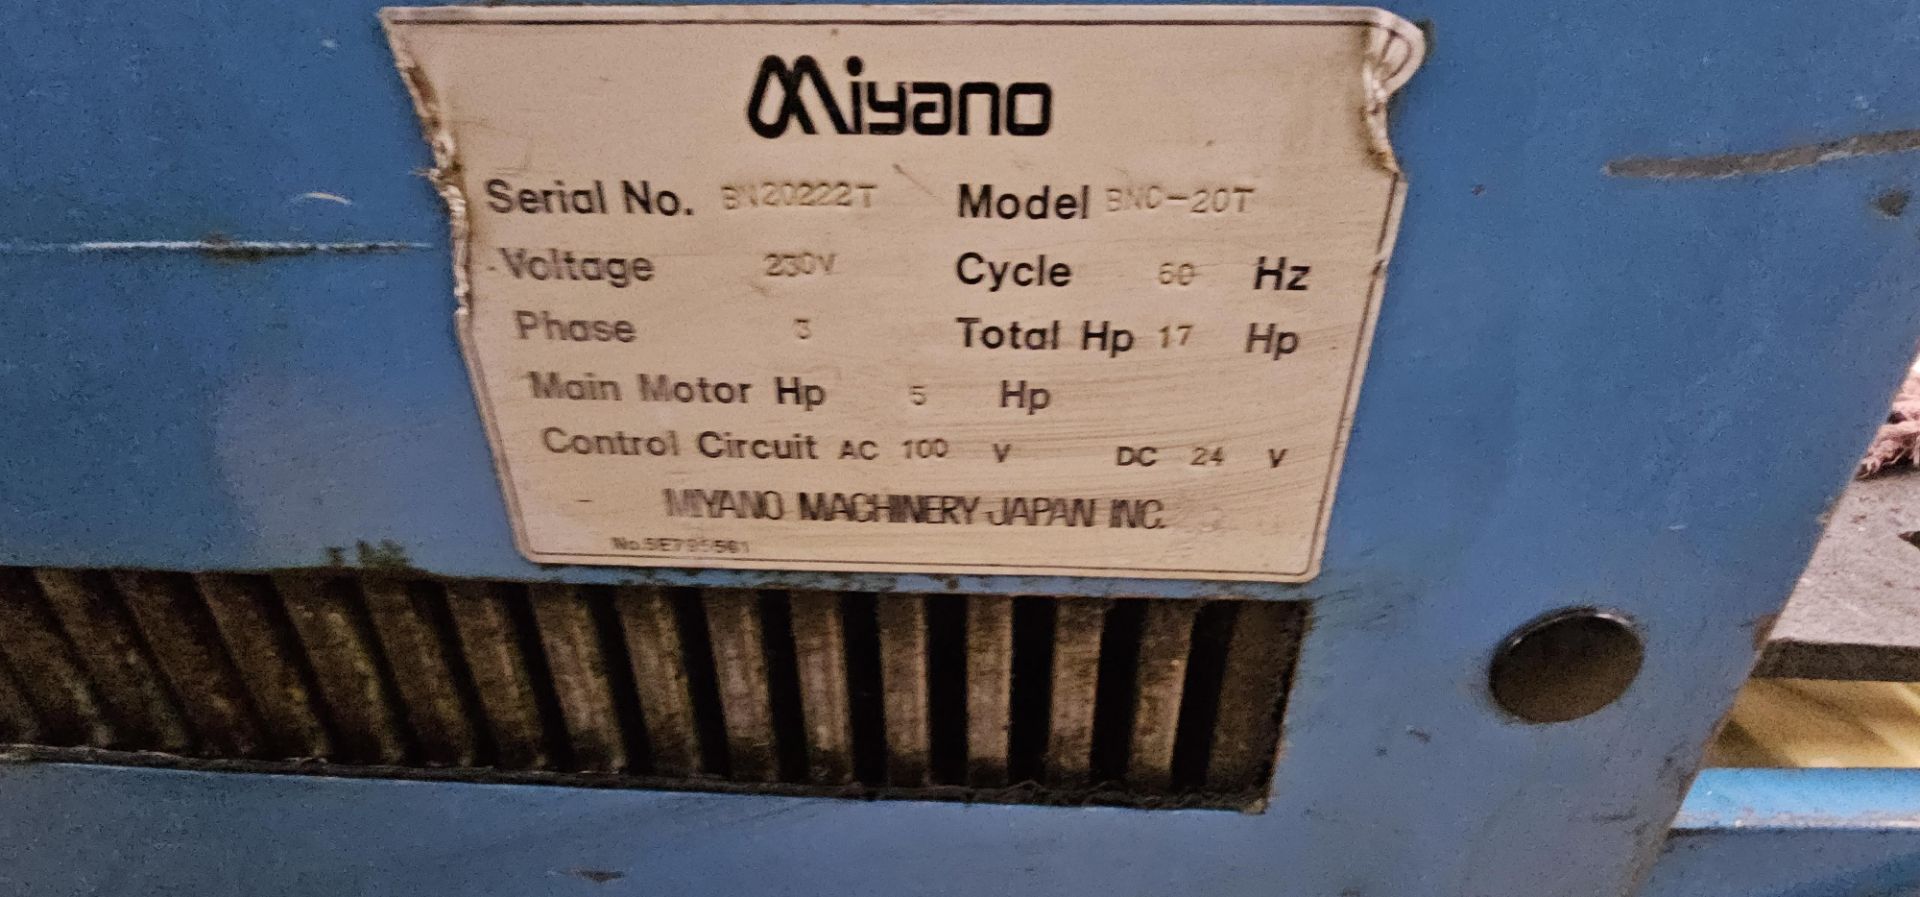 Miyano BNC-20T CNC Lathe, SN BN20222T - Image 6 of 7